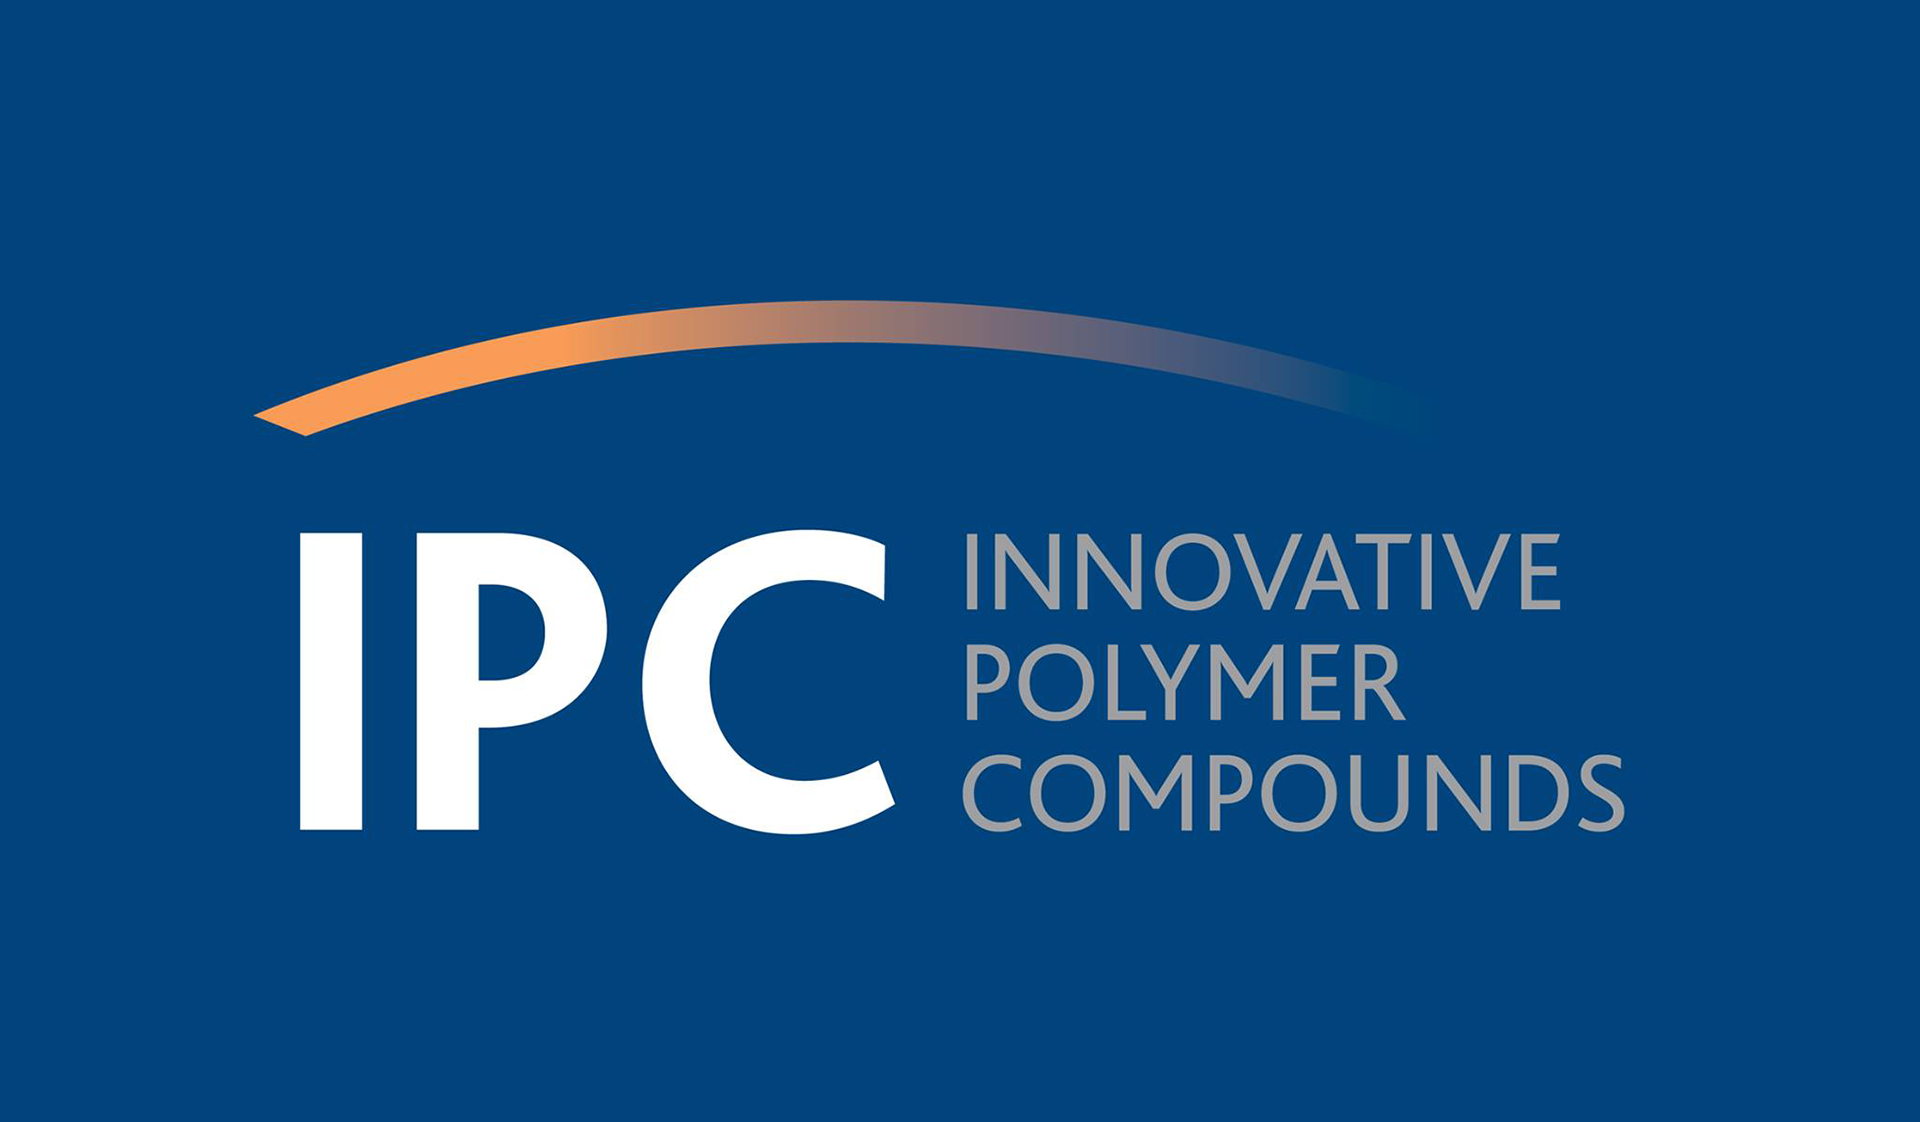 IPC - innovative polymer compounds